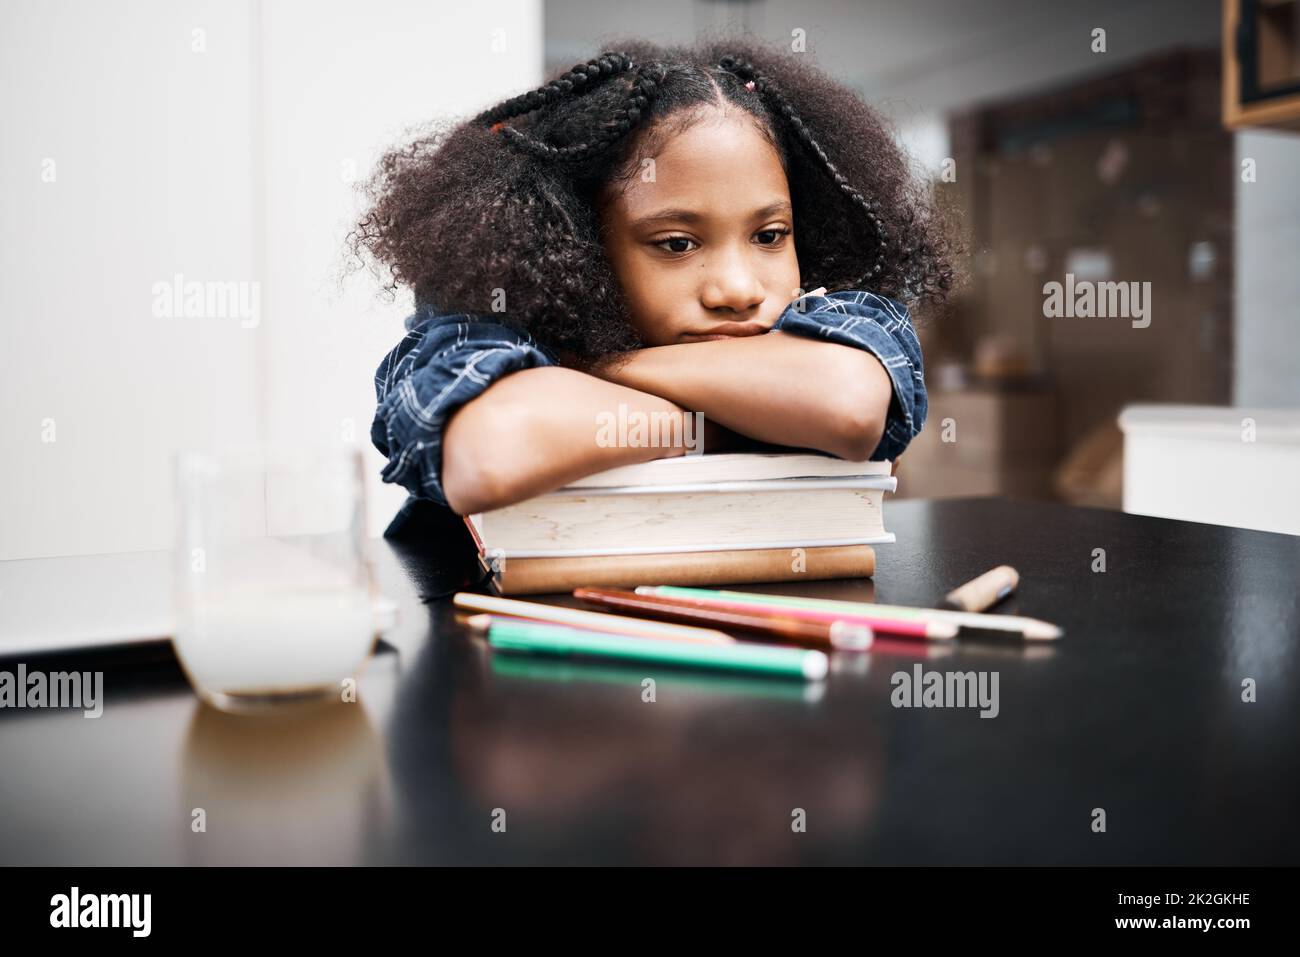 Ich wünschte, ich hätte einen Studienfreund. Aufnahme eines jungen Mädchens, das unglücklich aussieht, während es zu Hause einen Schulauftrag macht. Stockfoto